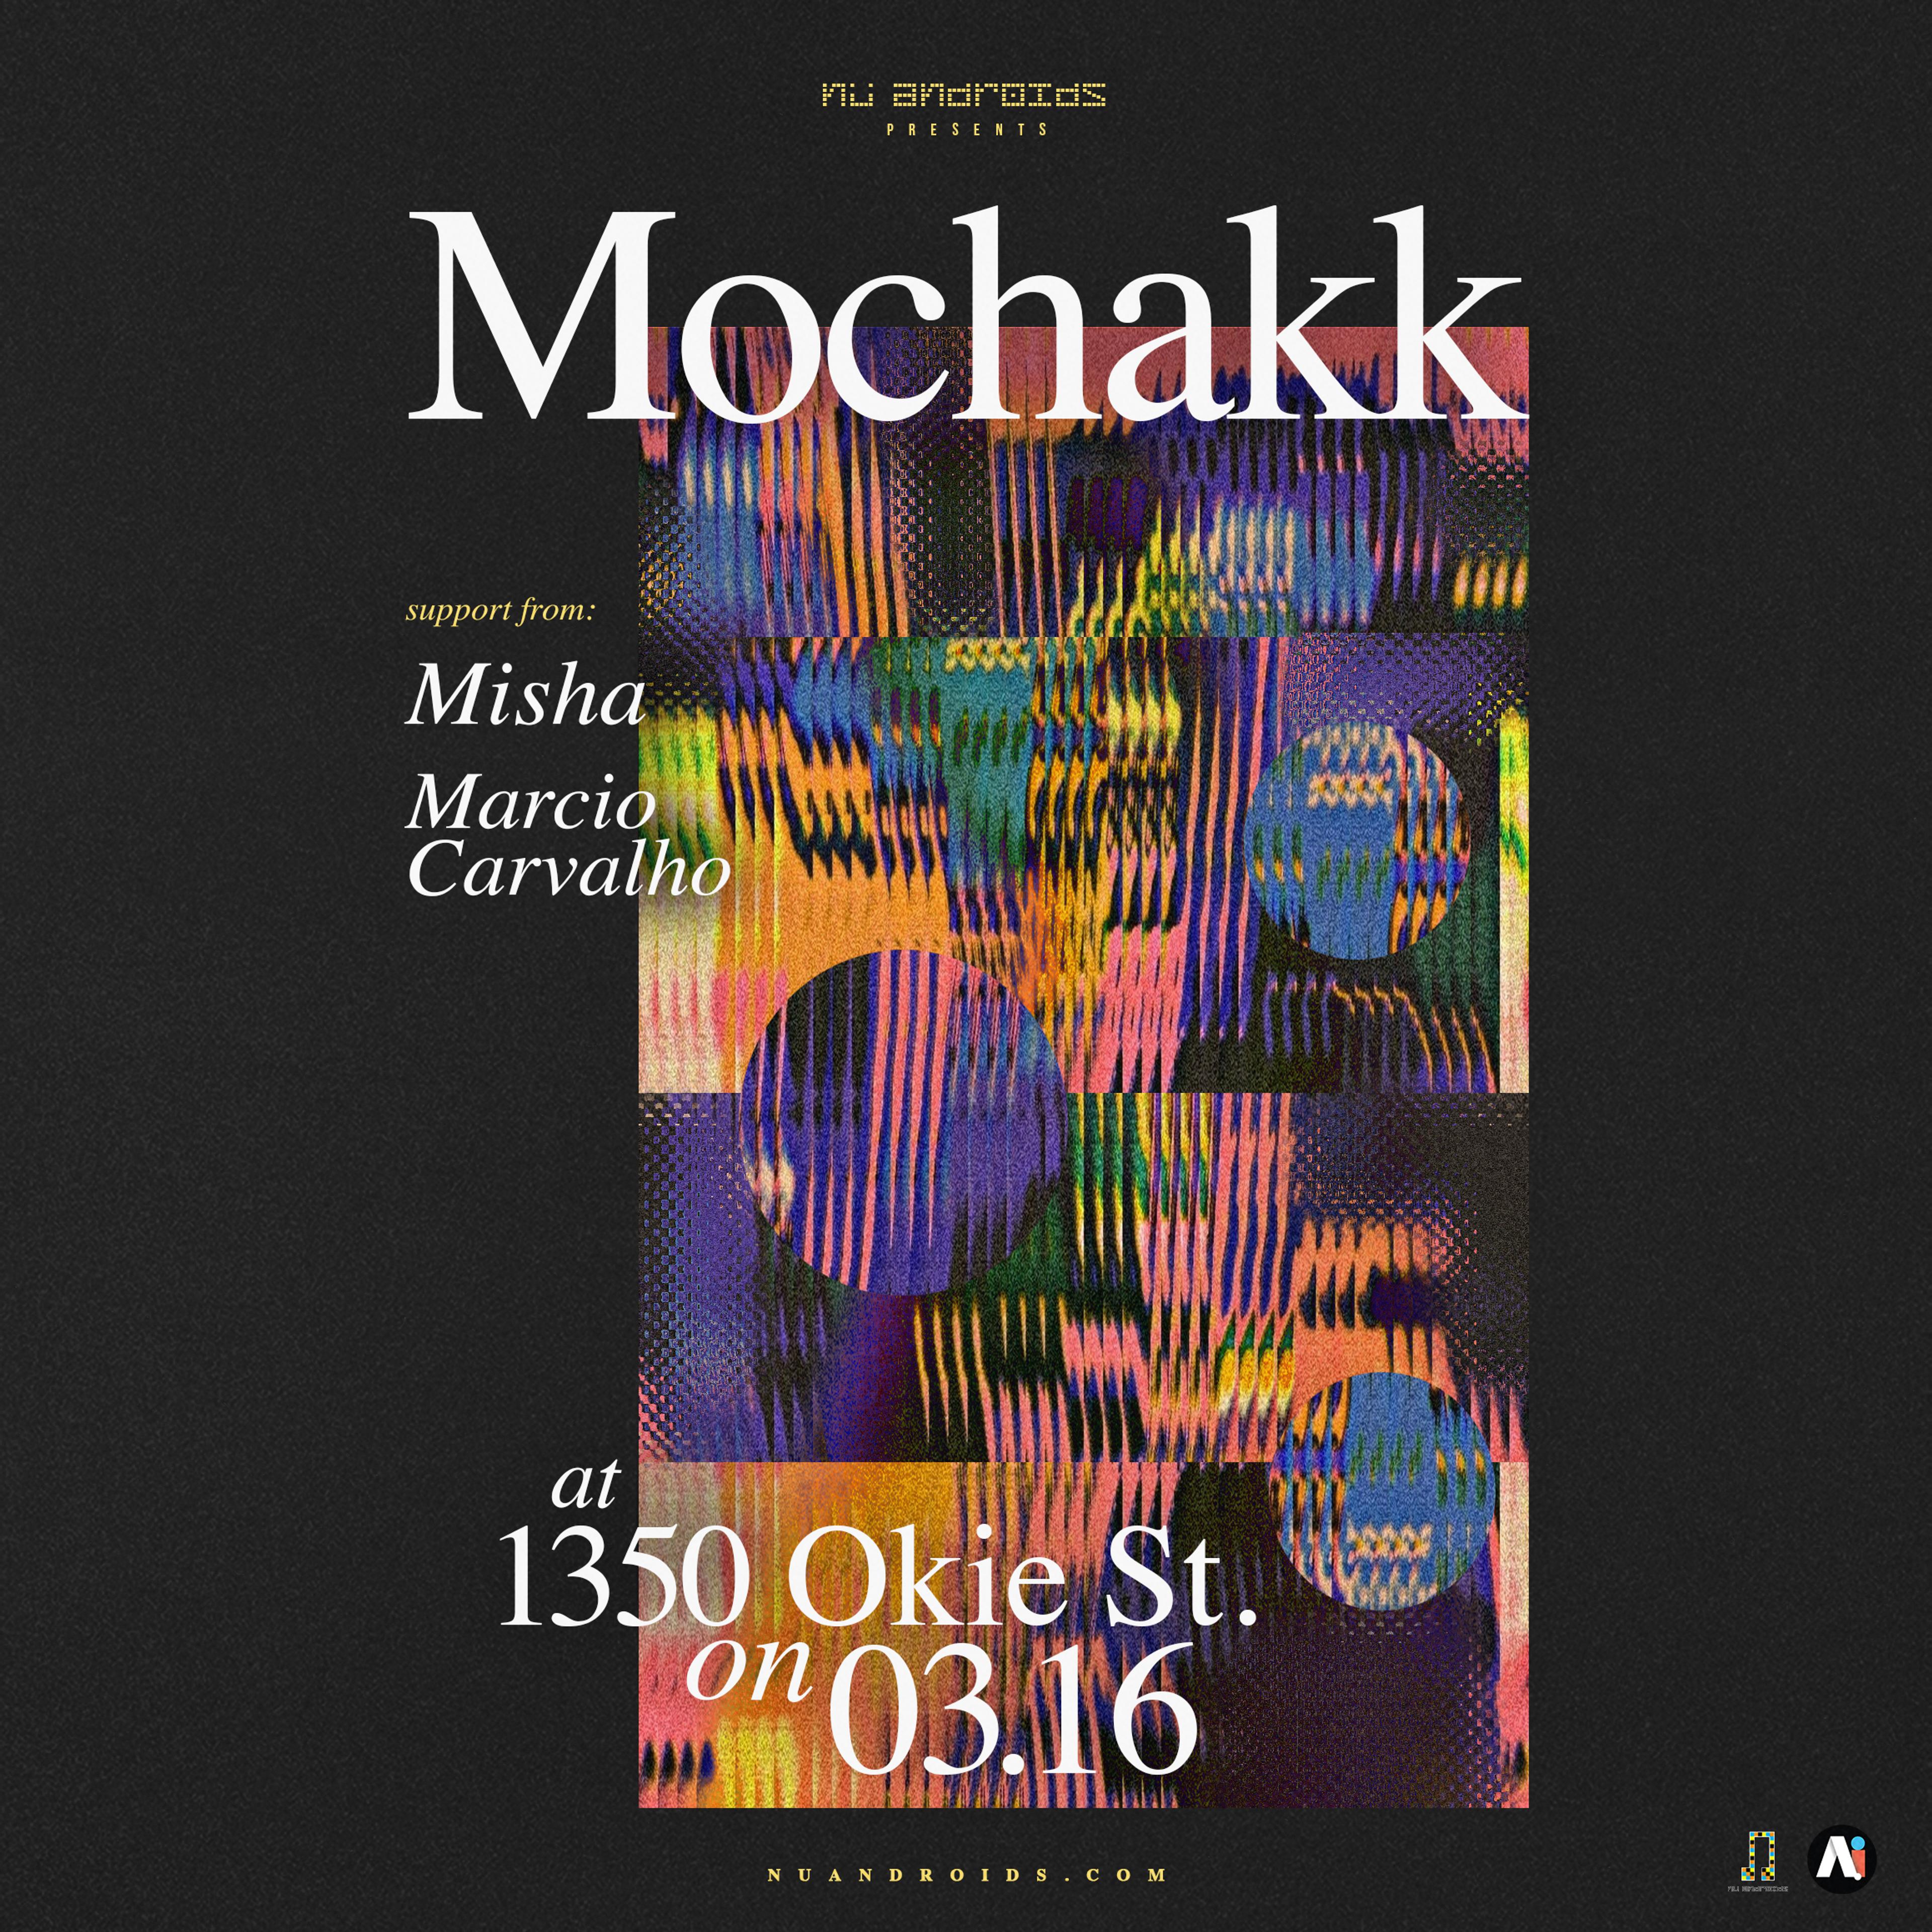 Flyer image for Mochakk